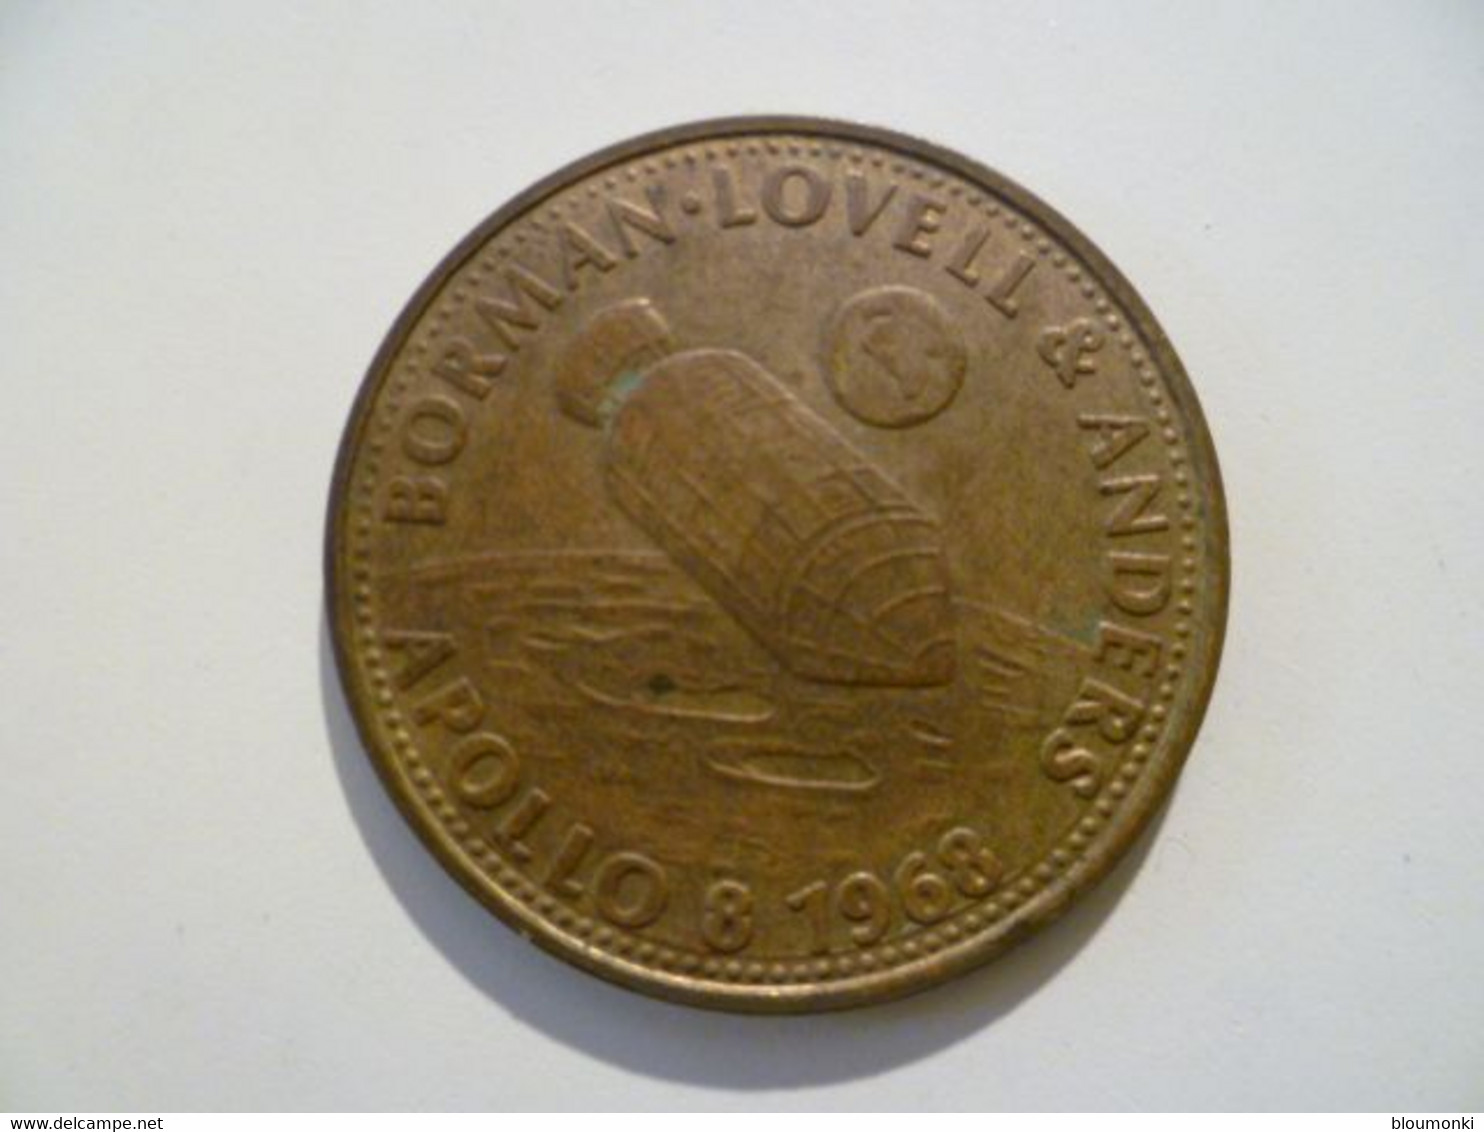 Jeton Médaille  / Etats Unis / USA Coins / Norman Lovell & Anders Apollo 8 1968 / SHELL - Professionnels/De Société